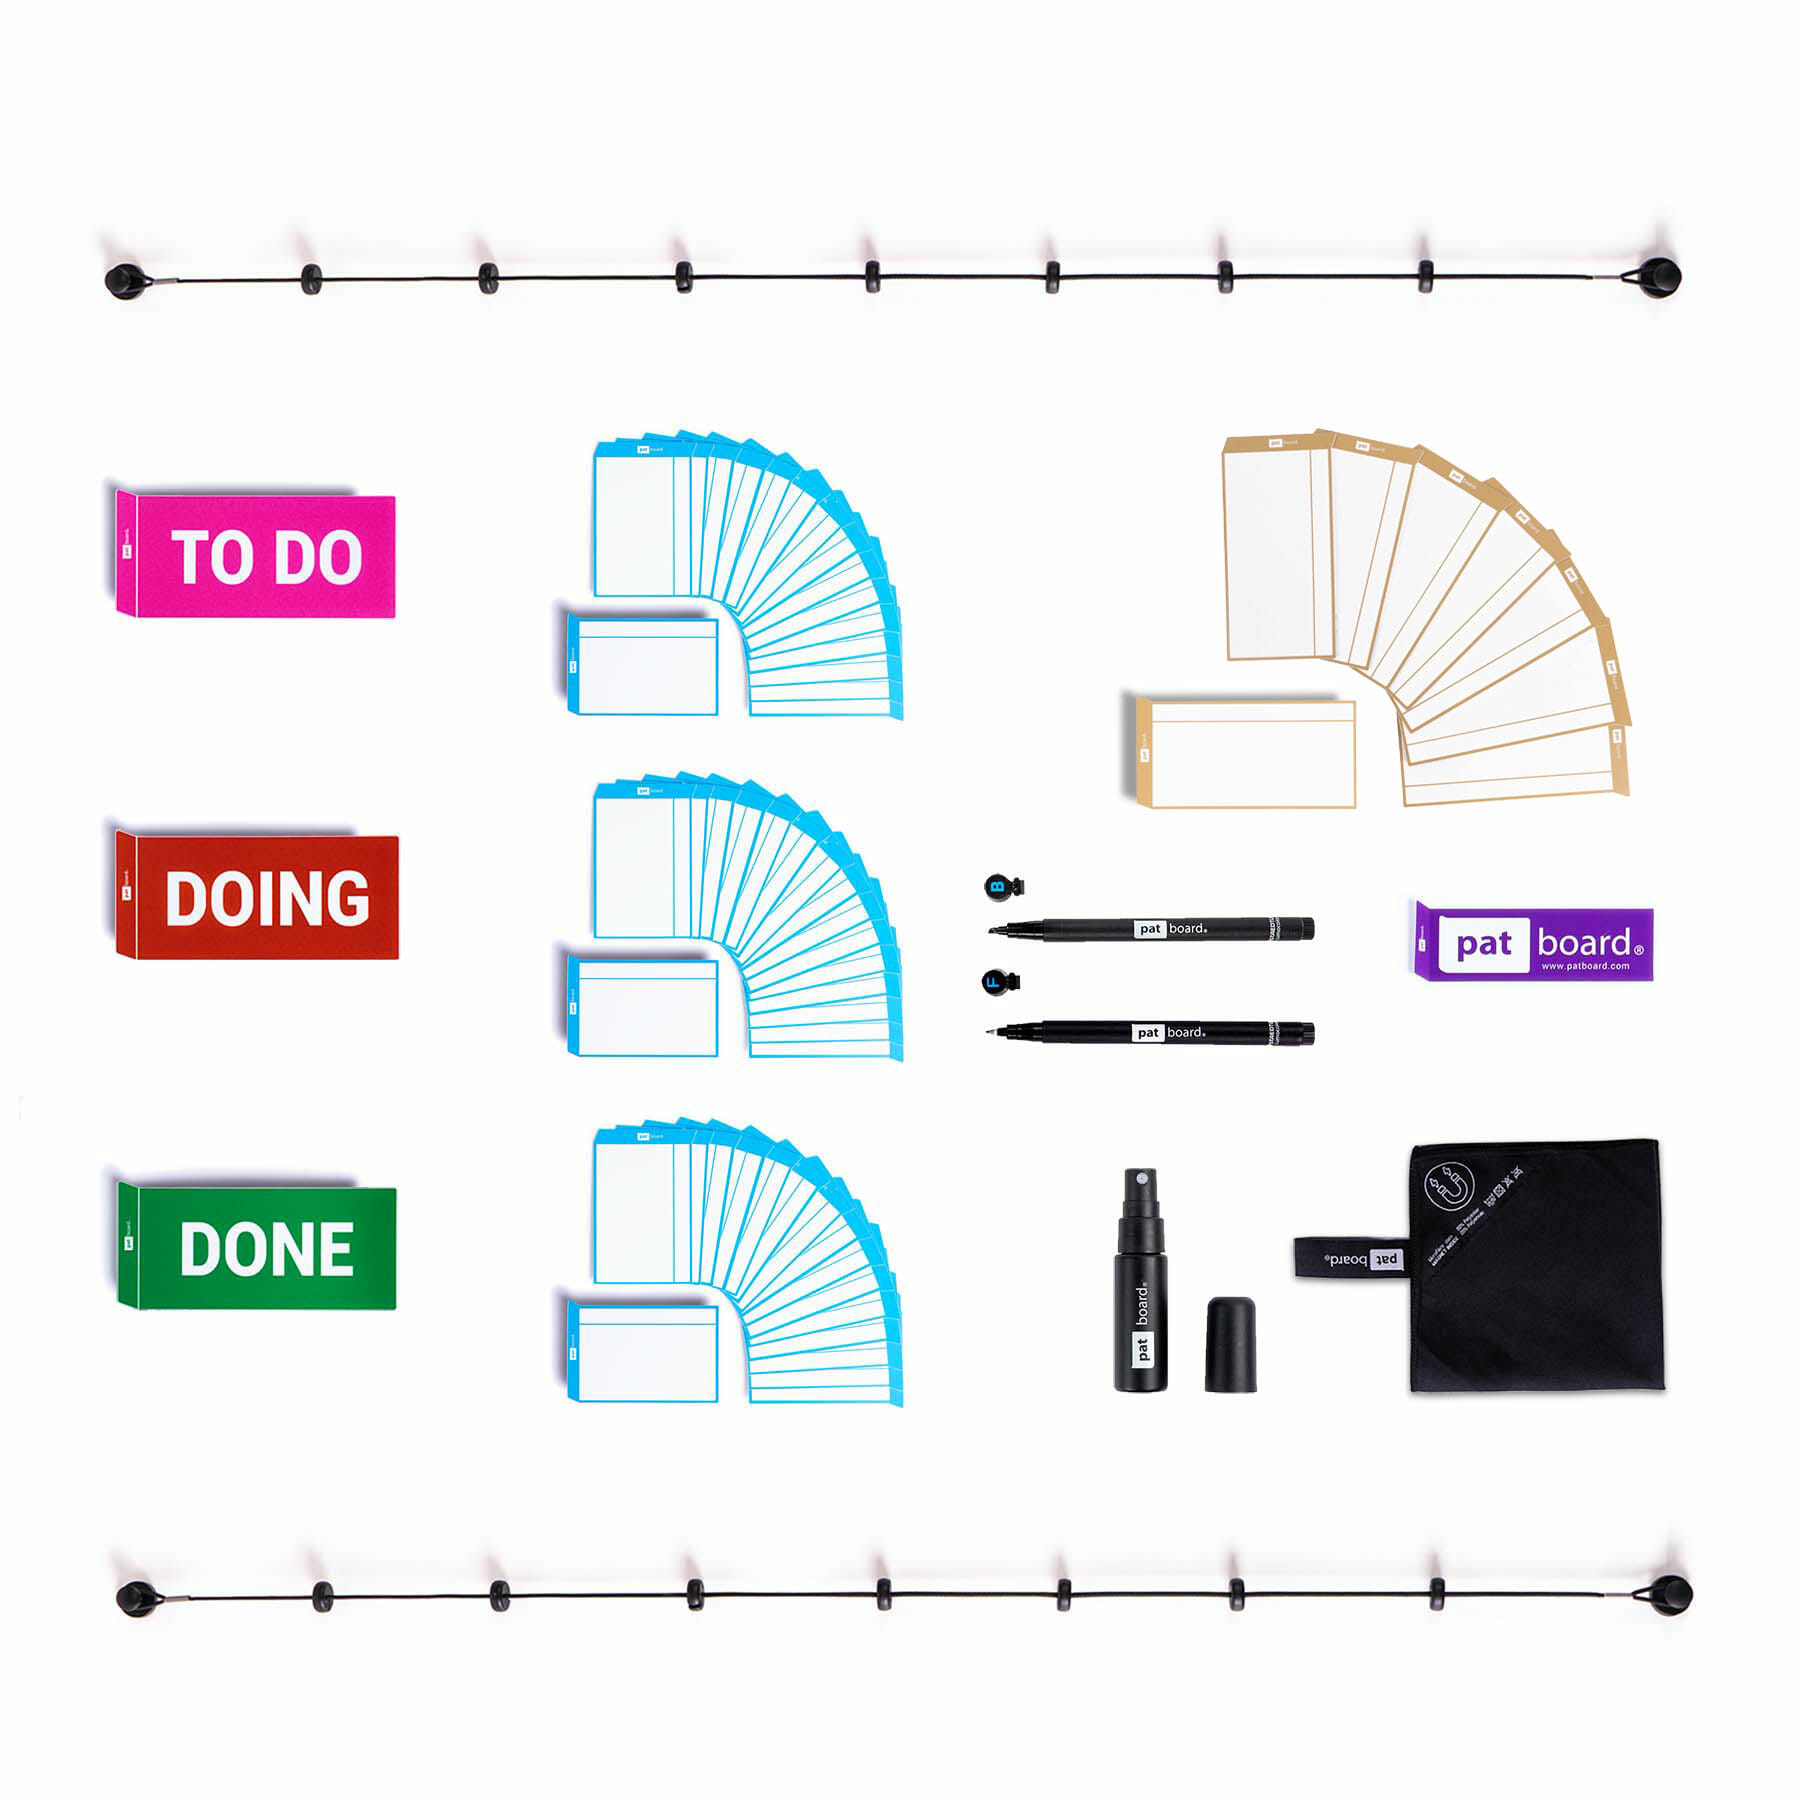 Herramientas de planificación magnética para su pizarra Imanes para agile kanban y lean tablero Scrum board home set con tarjetas magneticas de PATboard home scrum 